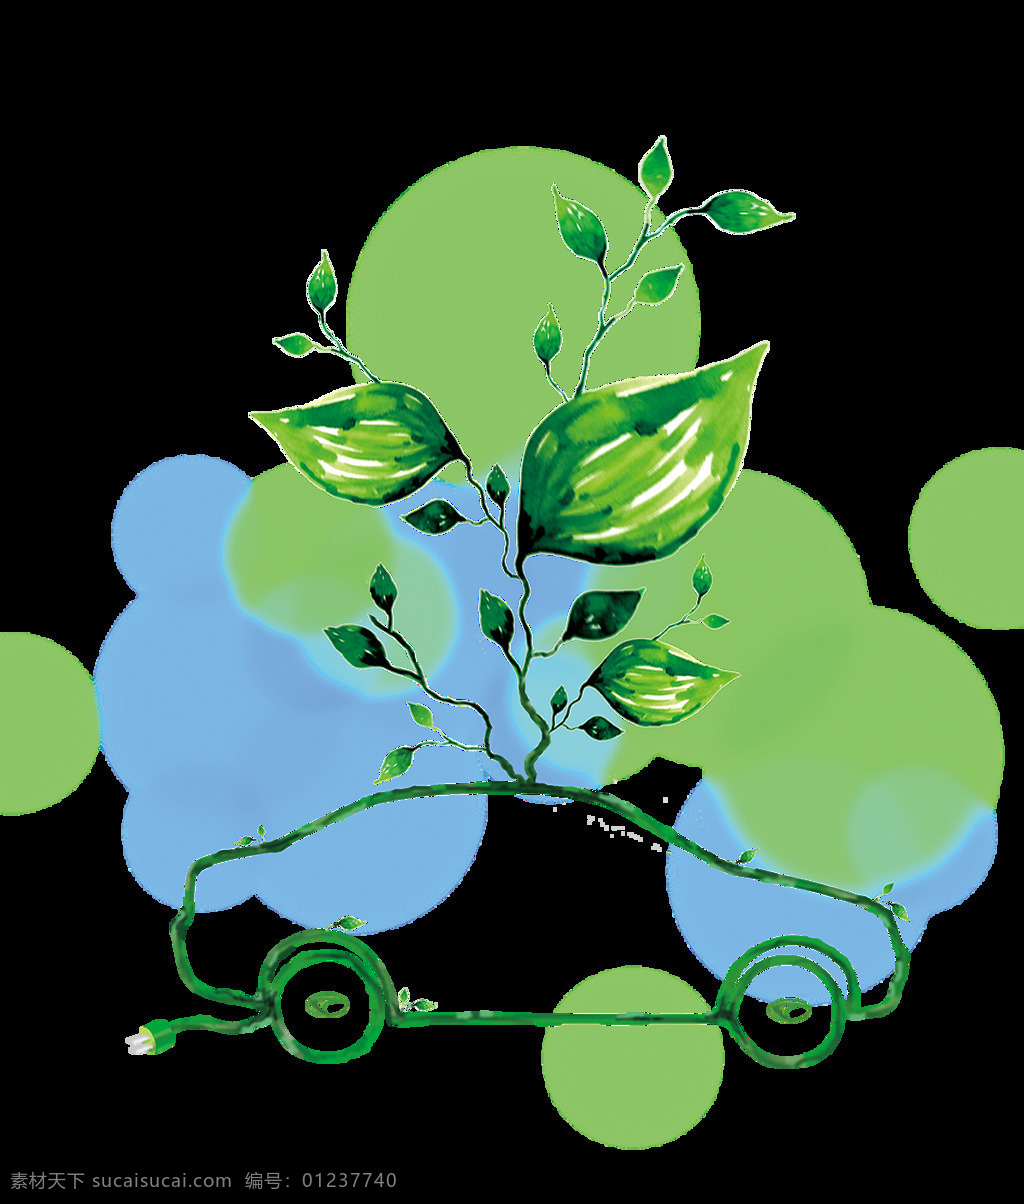 环保汽车 绿色汽车 汽车外廓 汽车树苗 树叶 绿色环保 元素